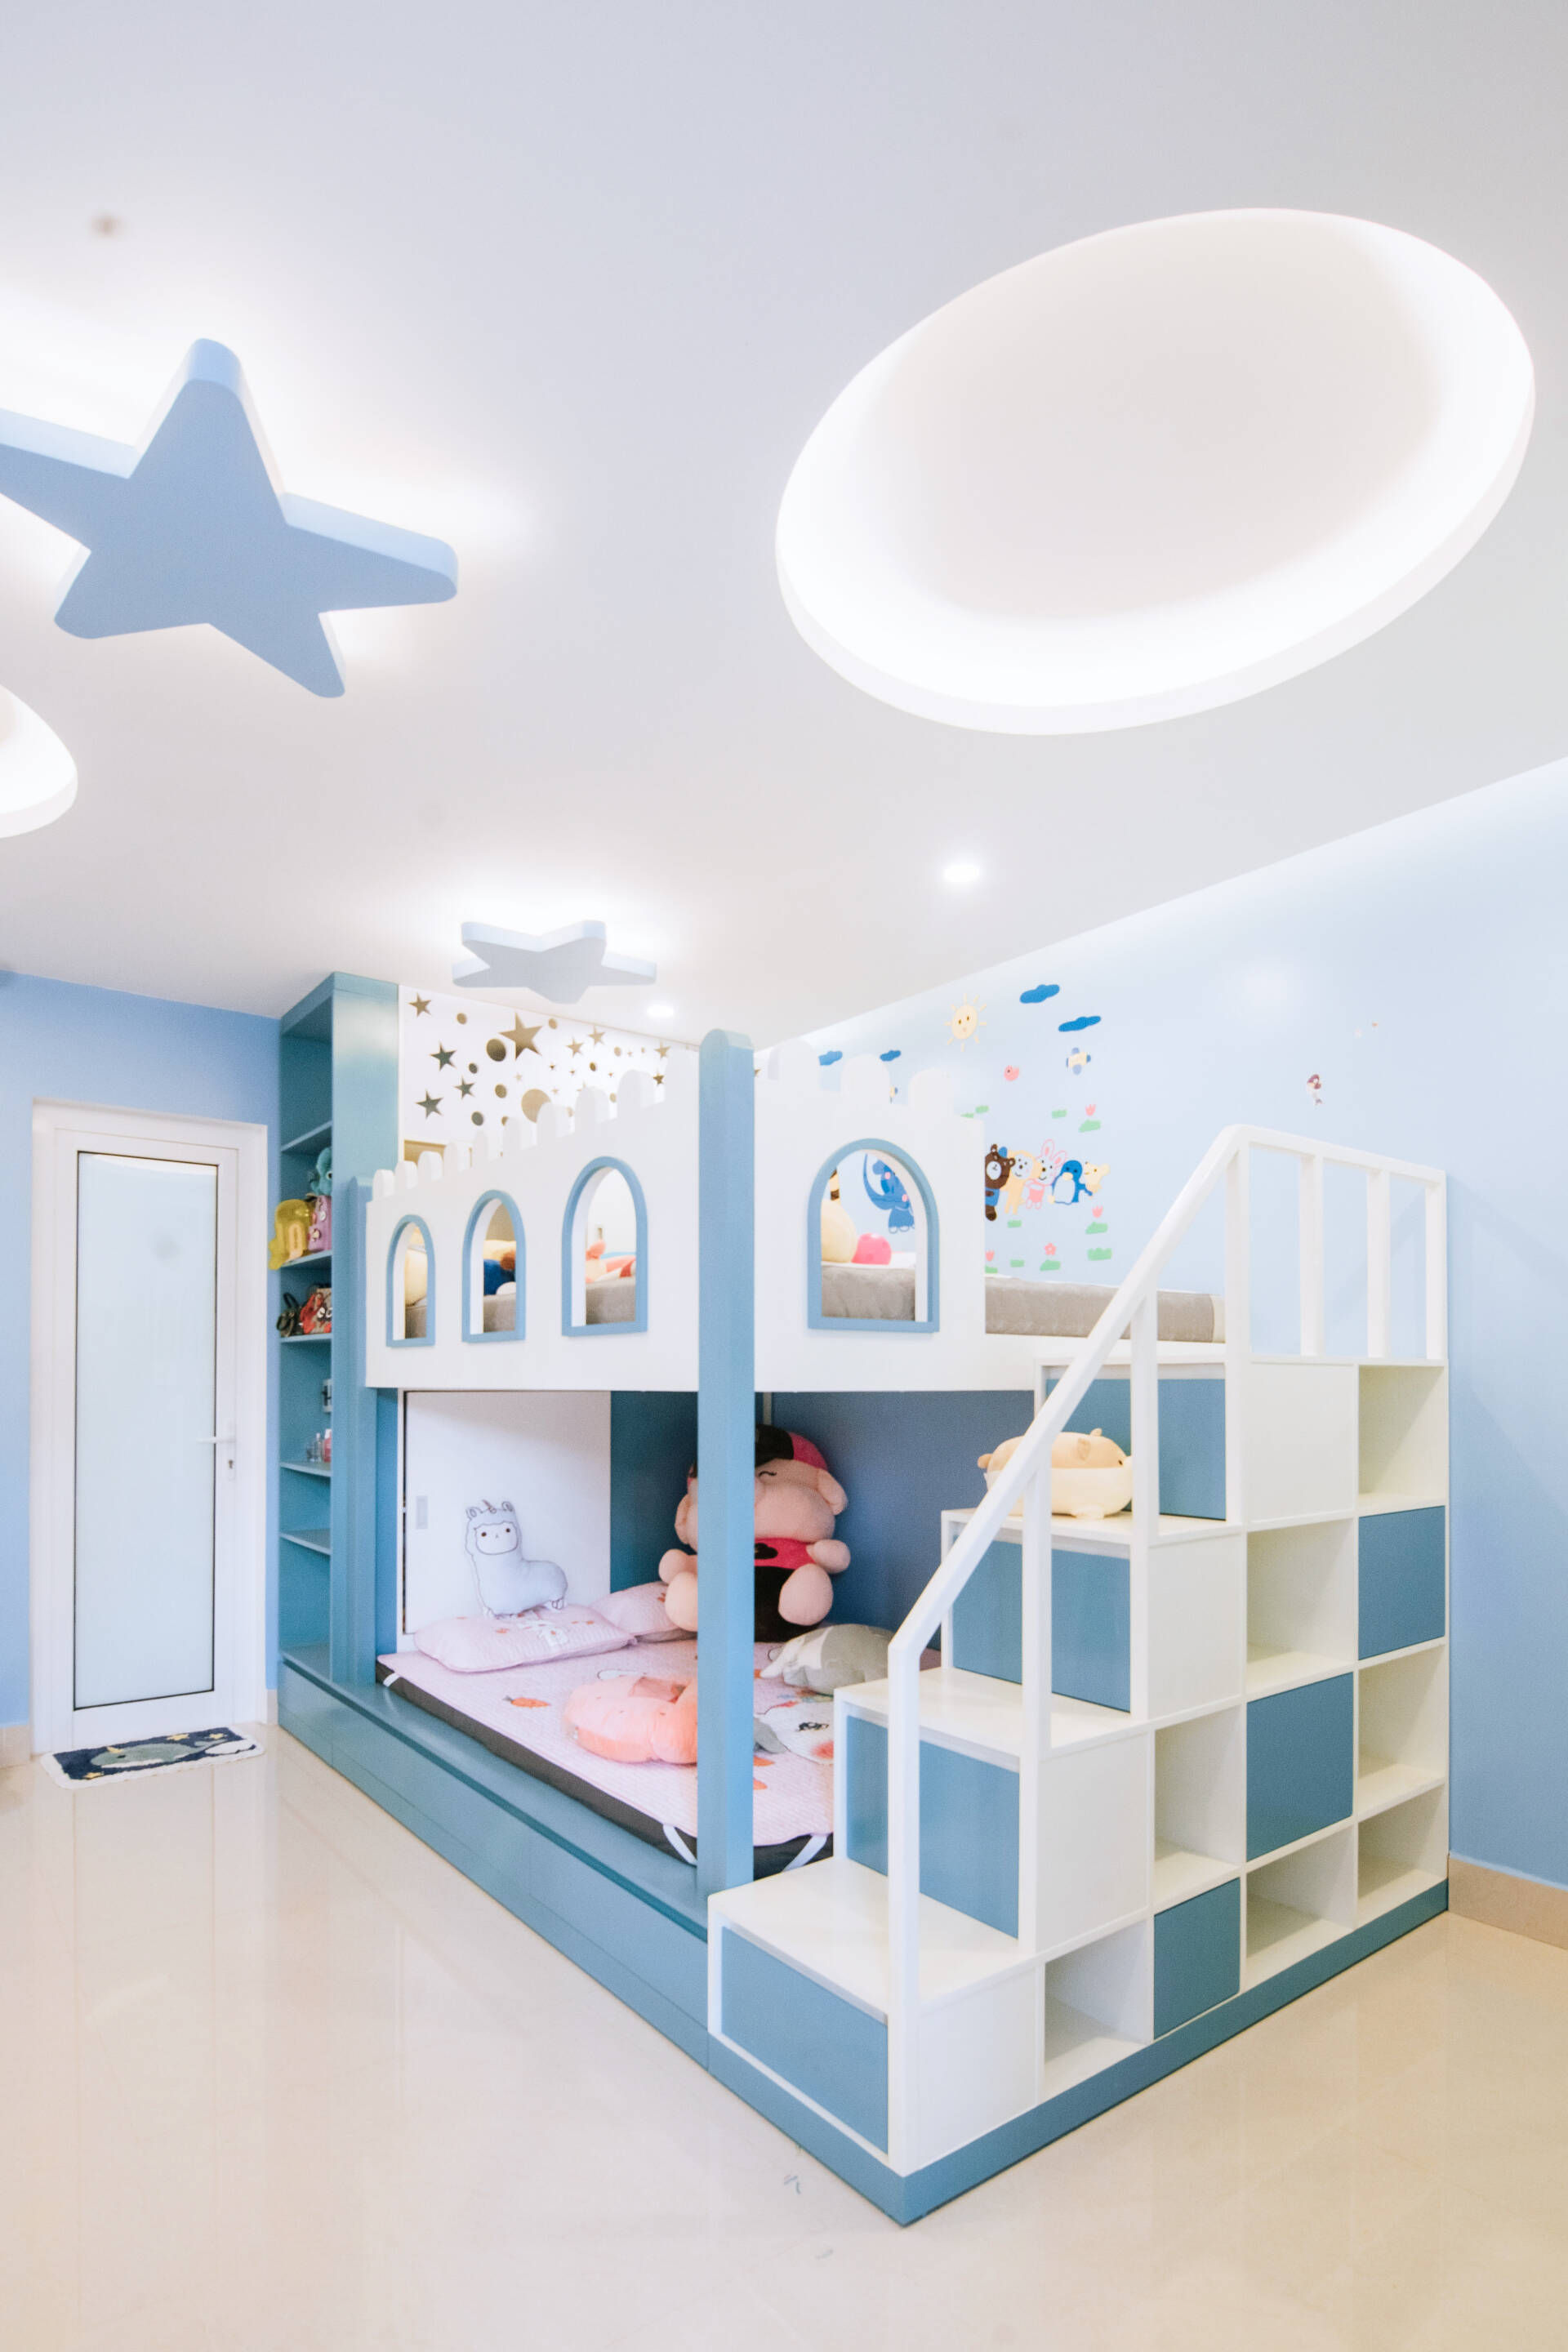 Phòng ngủ của các con được thiết kế dễ thương, mang gam màu trắng - xanh dương làm chủ đạo. 